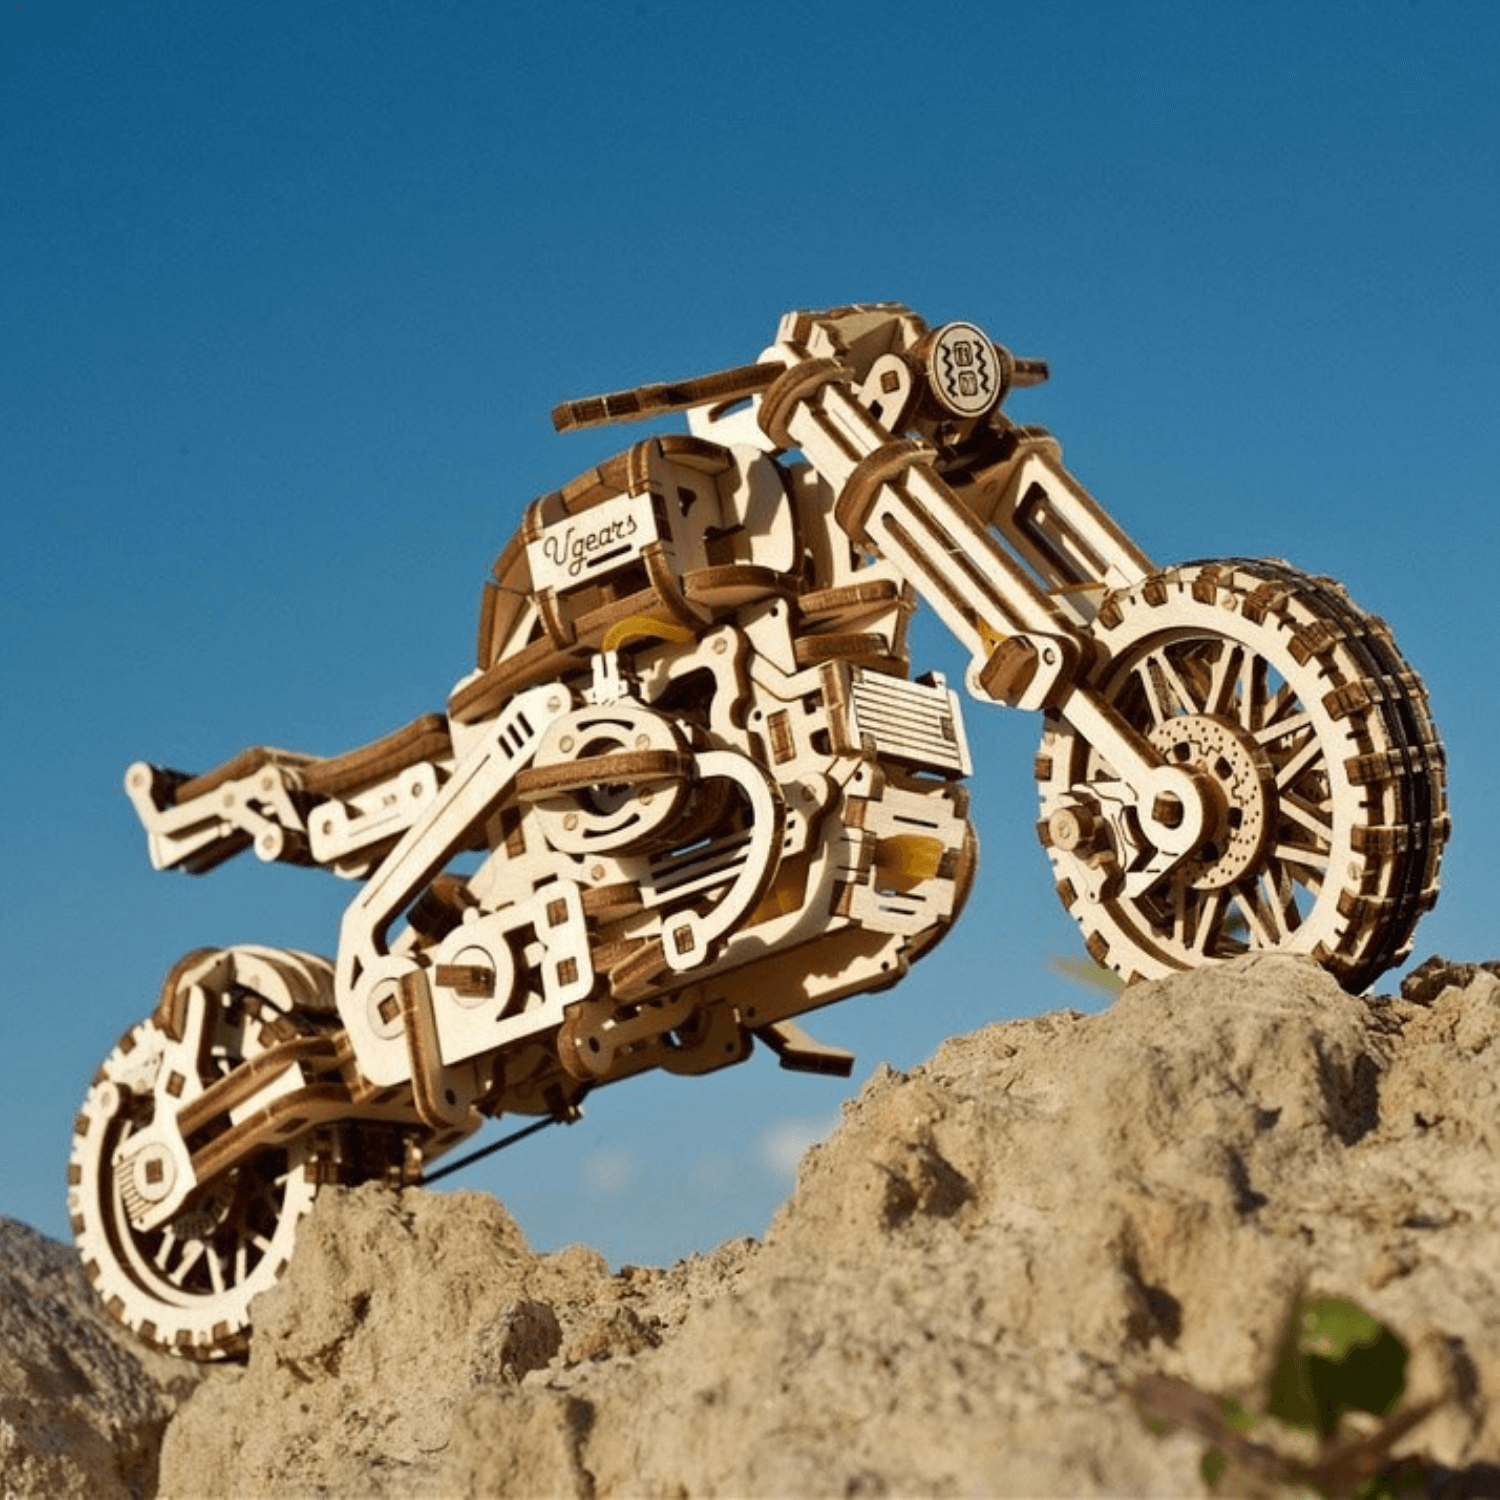 Motorcycle Scrambler UGR-10